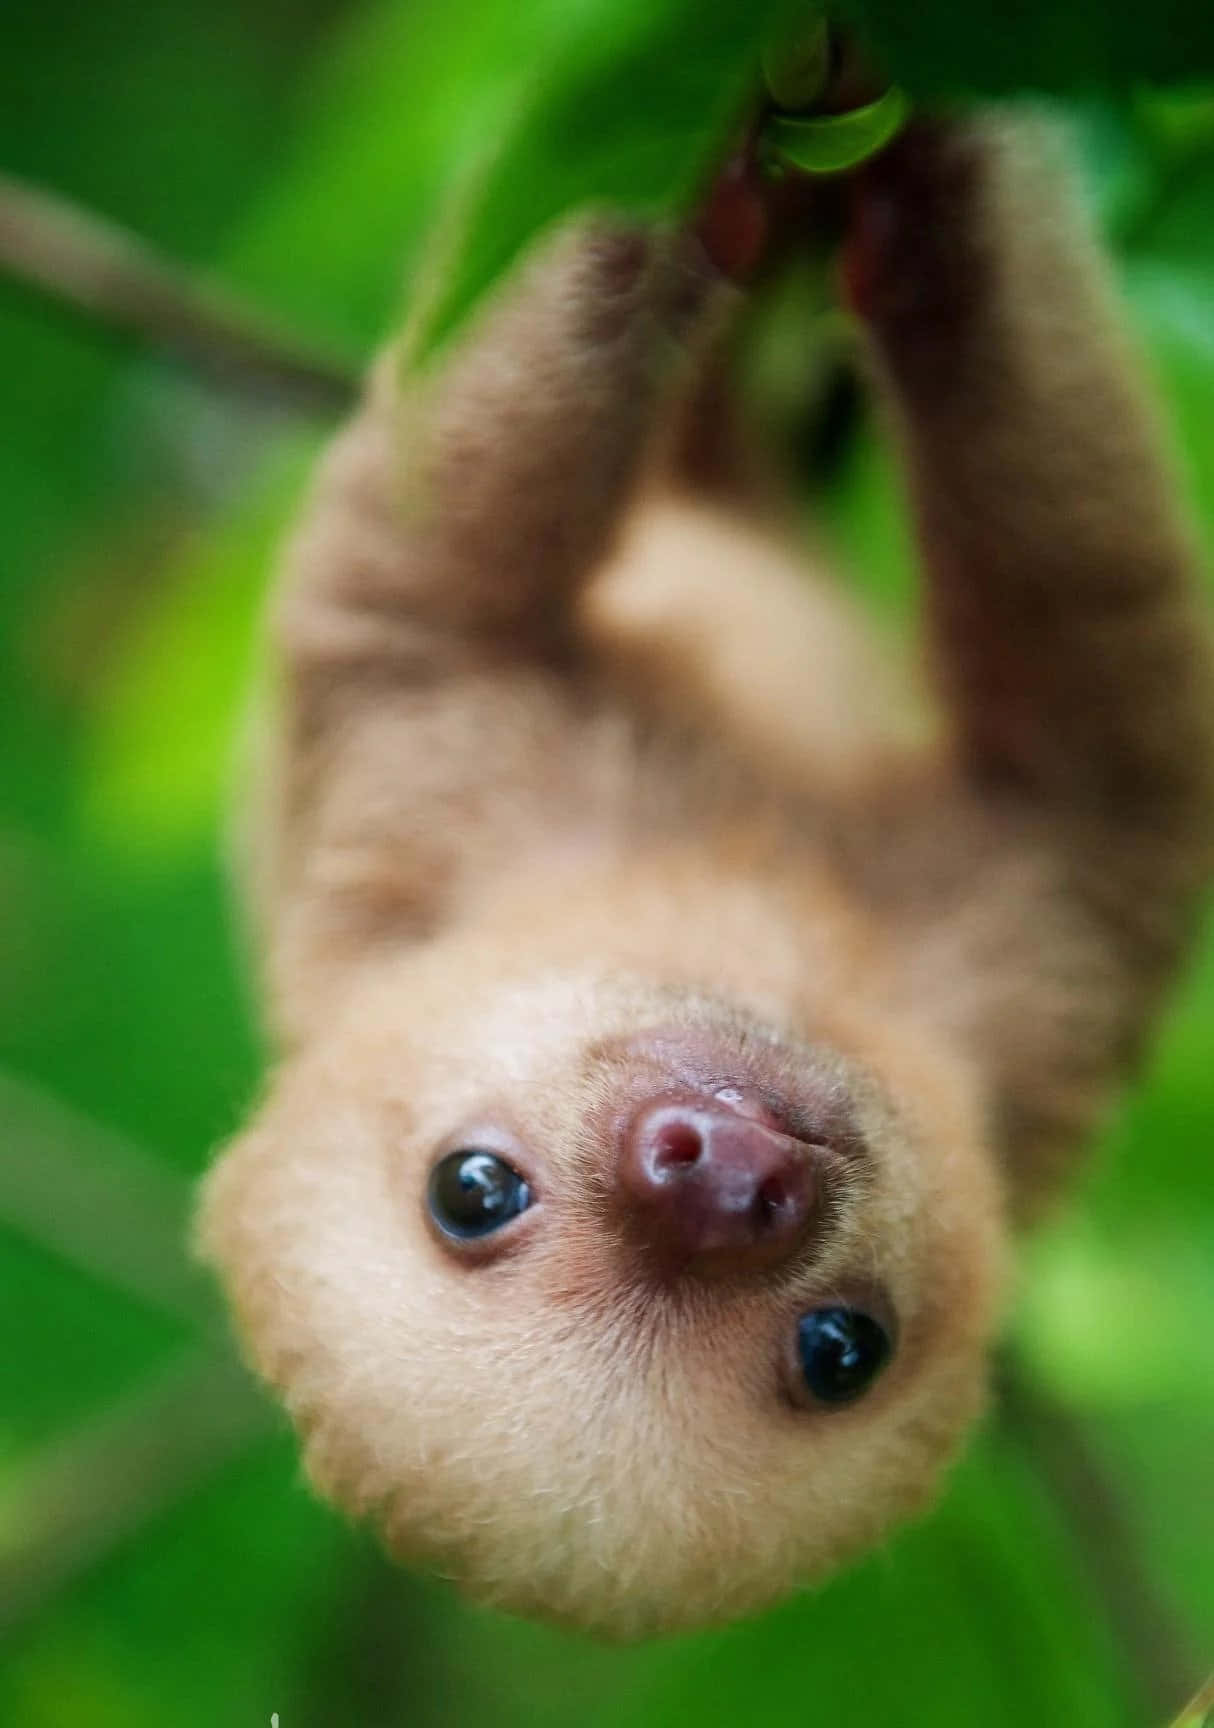 An adorable baby sloth enjoying the sun